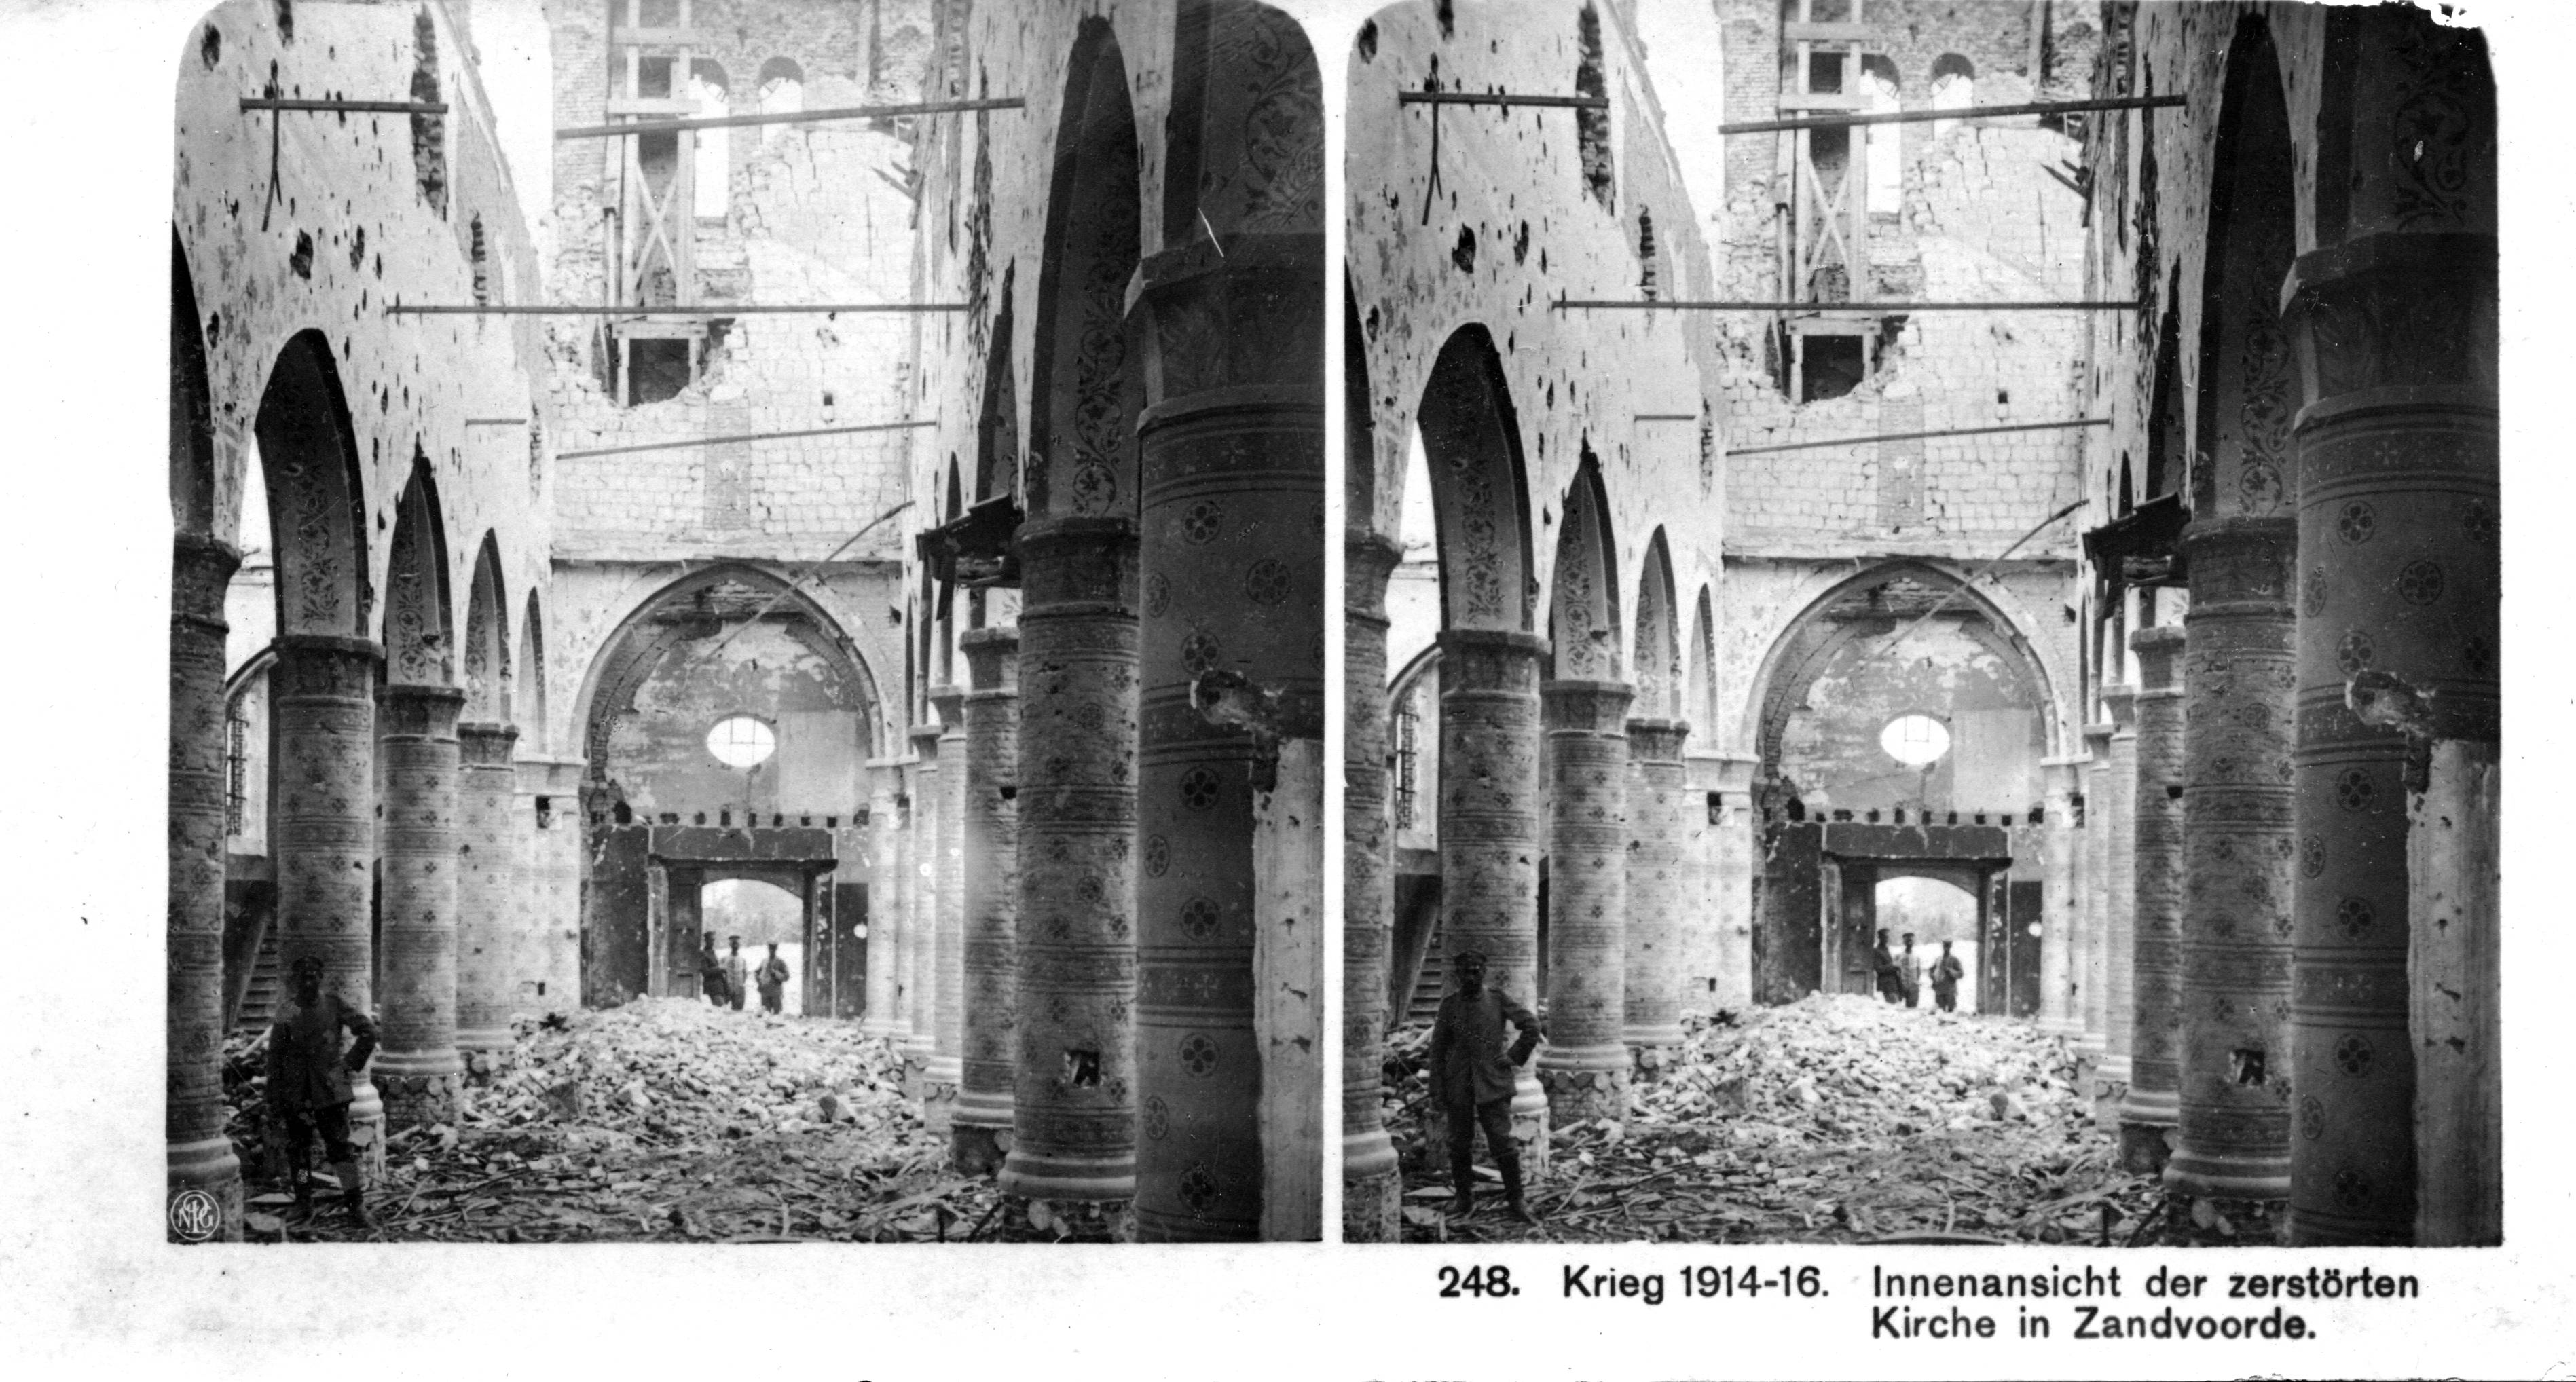 "Innenansicht der zerstörten Kirche in Zandvoorde" - Interior of the dilapidated church in Zandvoorde (Belgium).